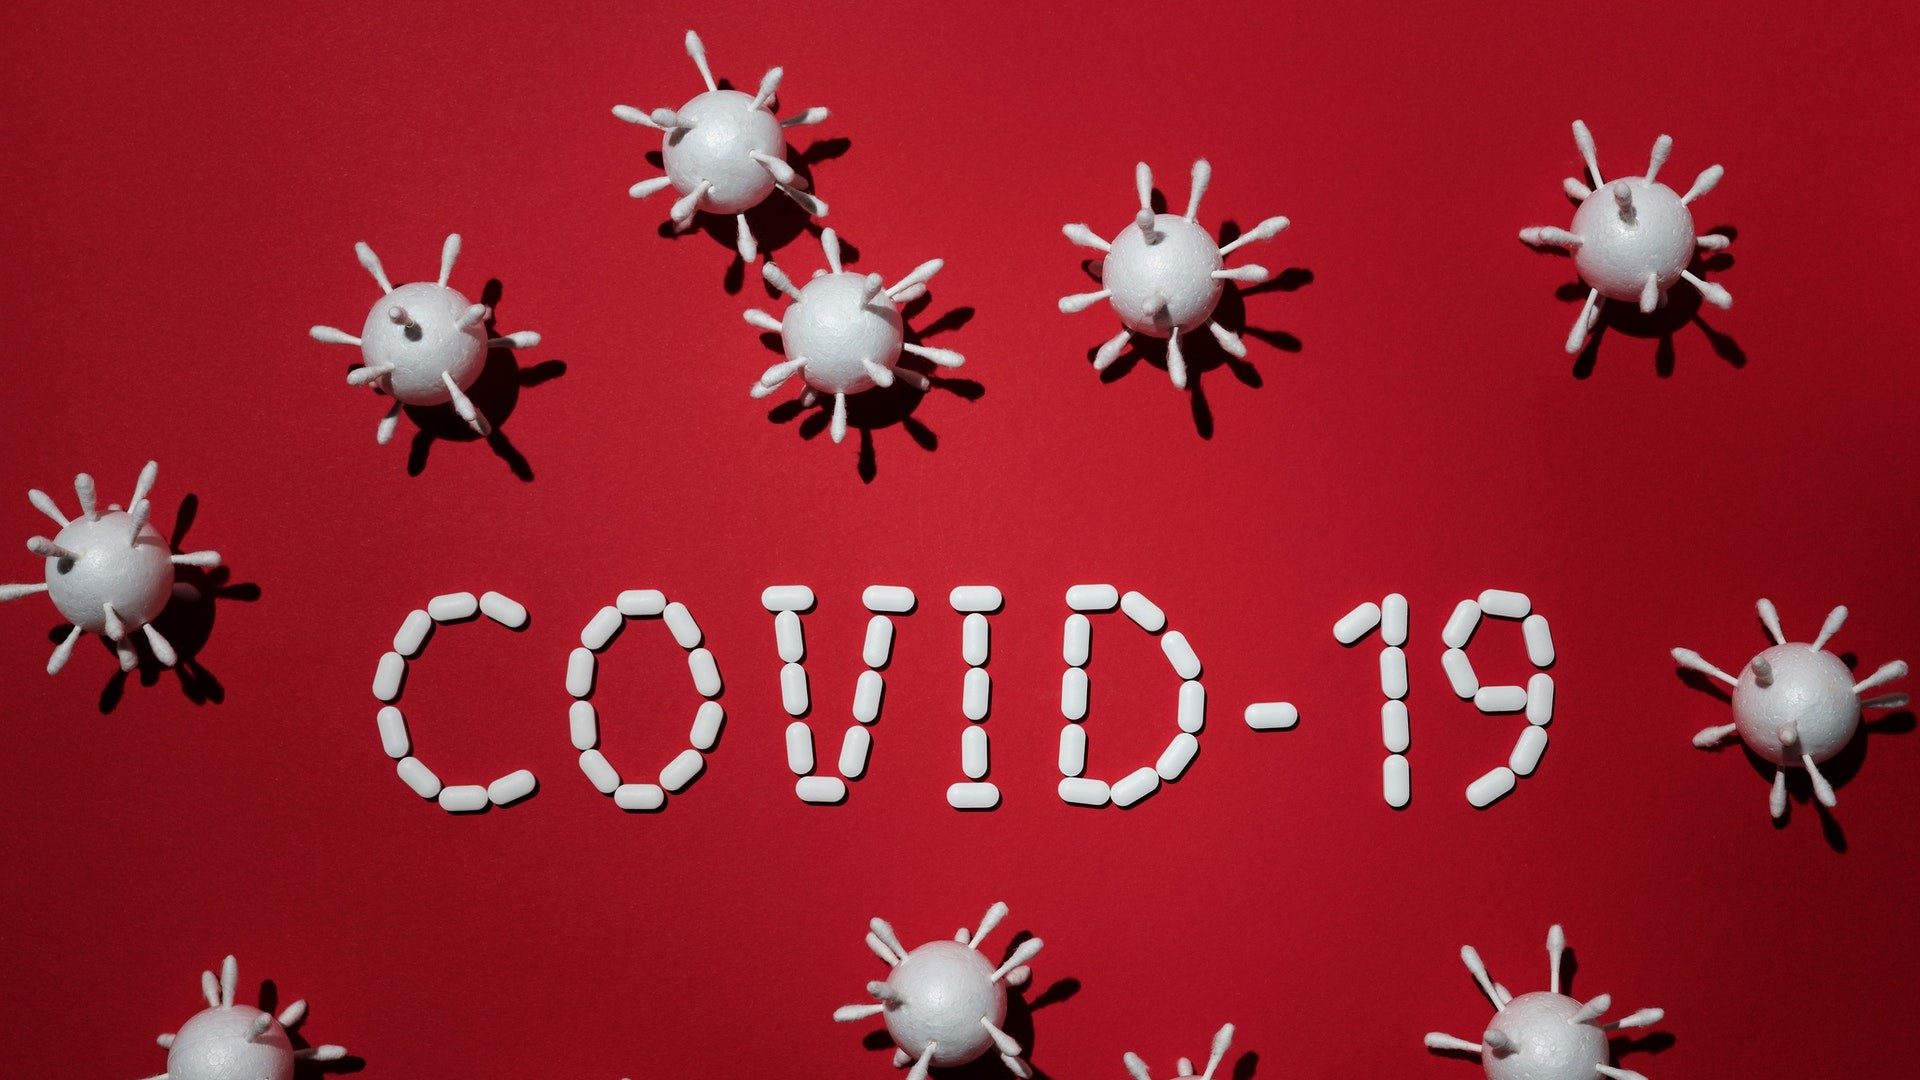 Schriftzug "Covid-19" auf rotem Untergrund mit Pillen und Virus-Figuren